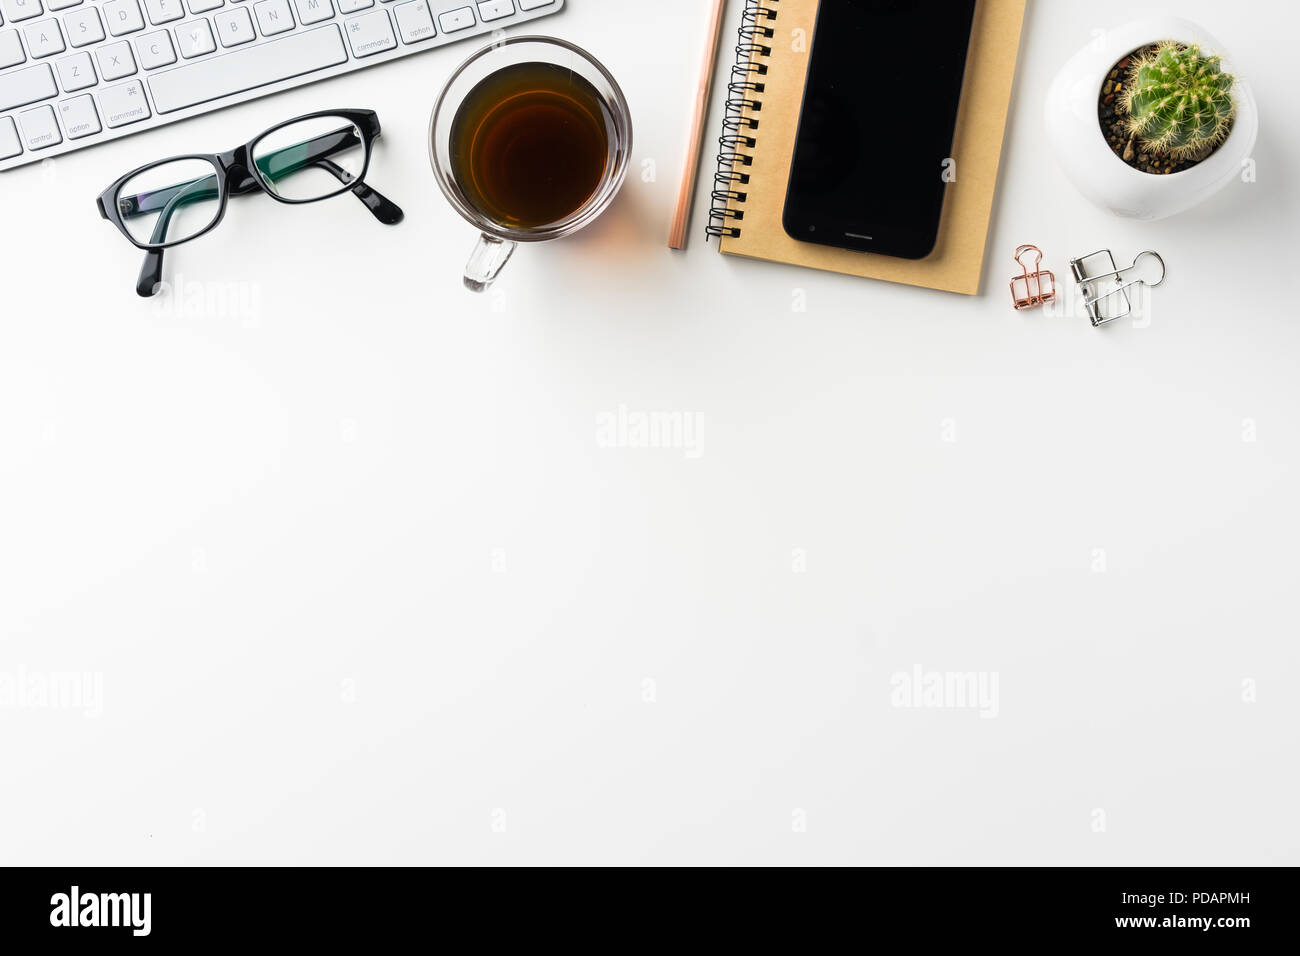 Business-Konzept - Draufsicht des weißen Desktophintergrund mit Notebook, Kaffee, Smartphone, Kakteen und Clip für Modell-design Stockfoto